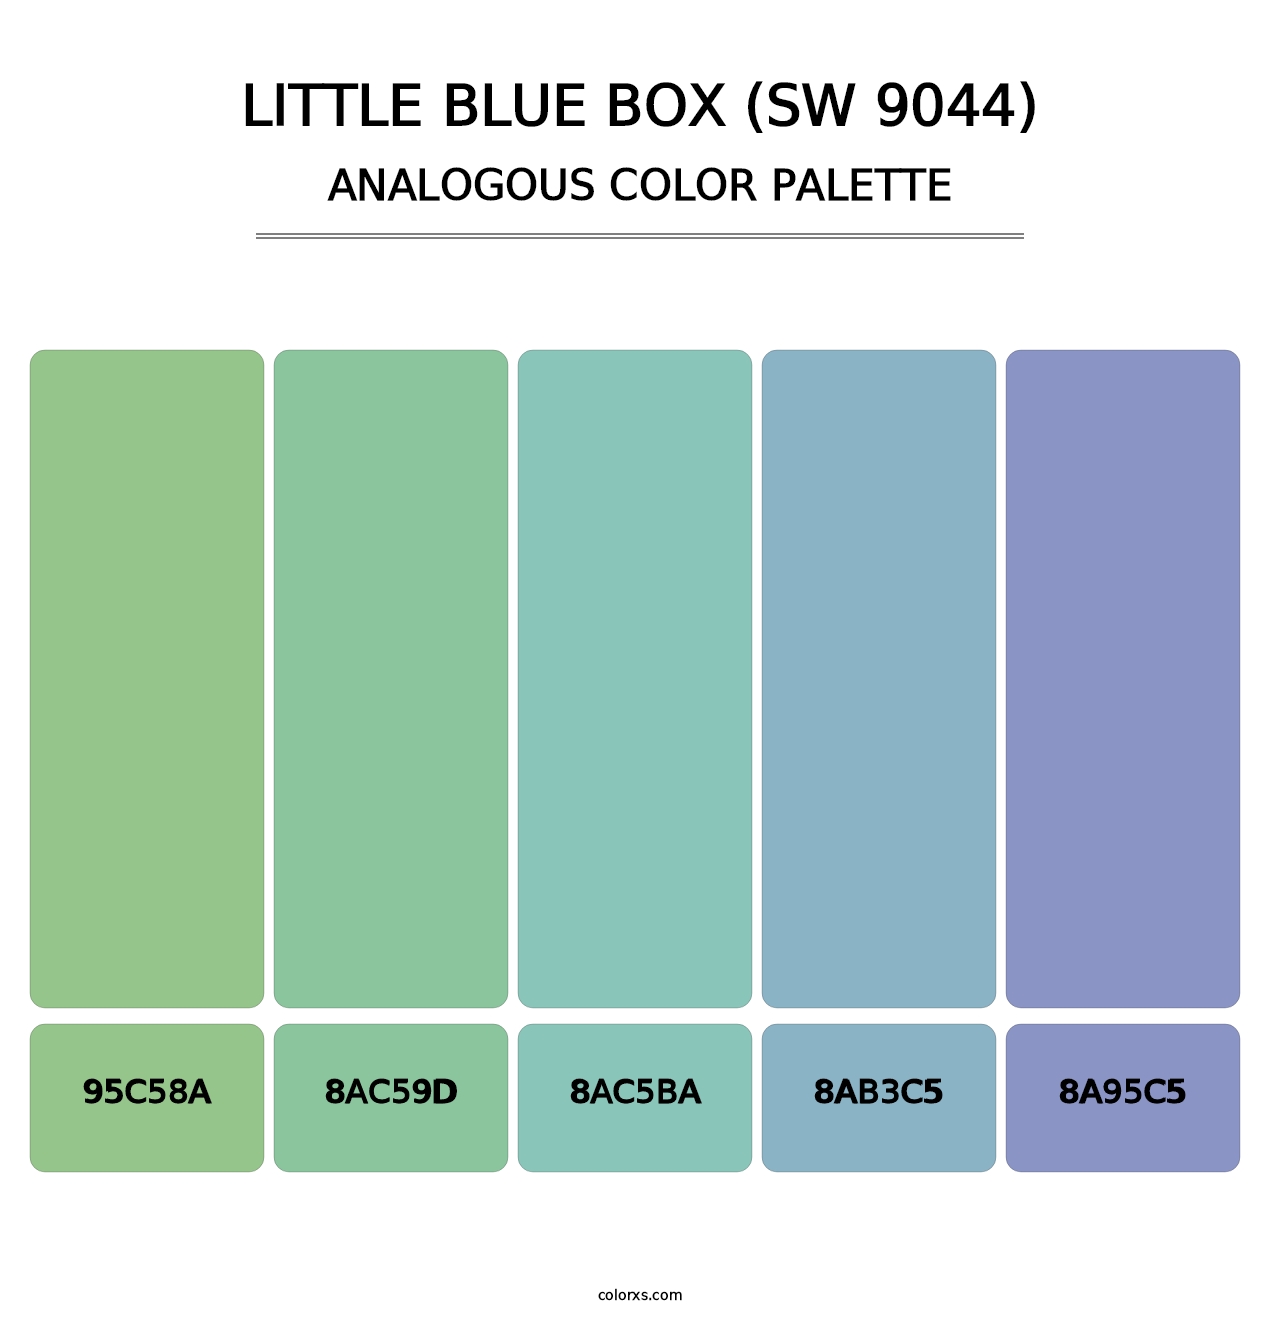 Little Blue Box (SW 9044) - Analogous Color Palette